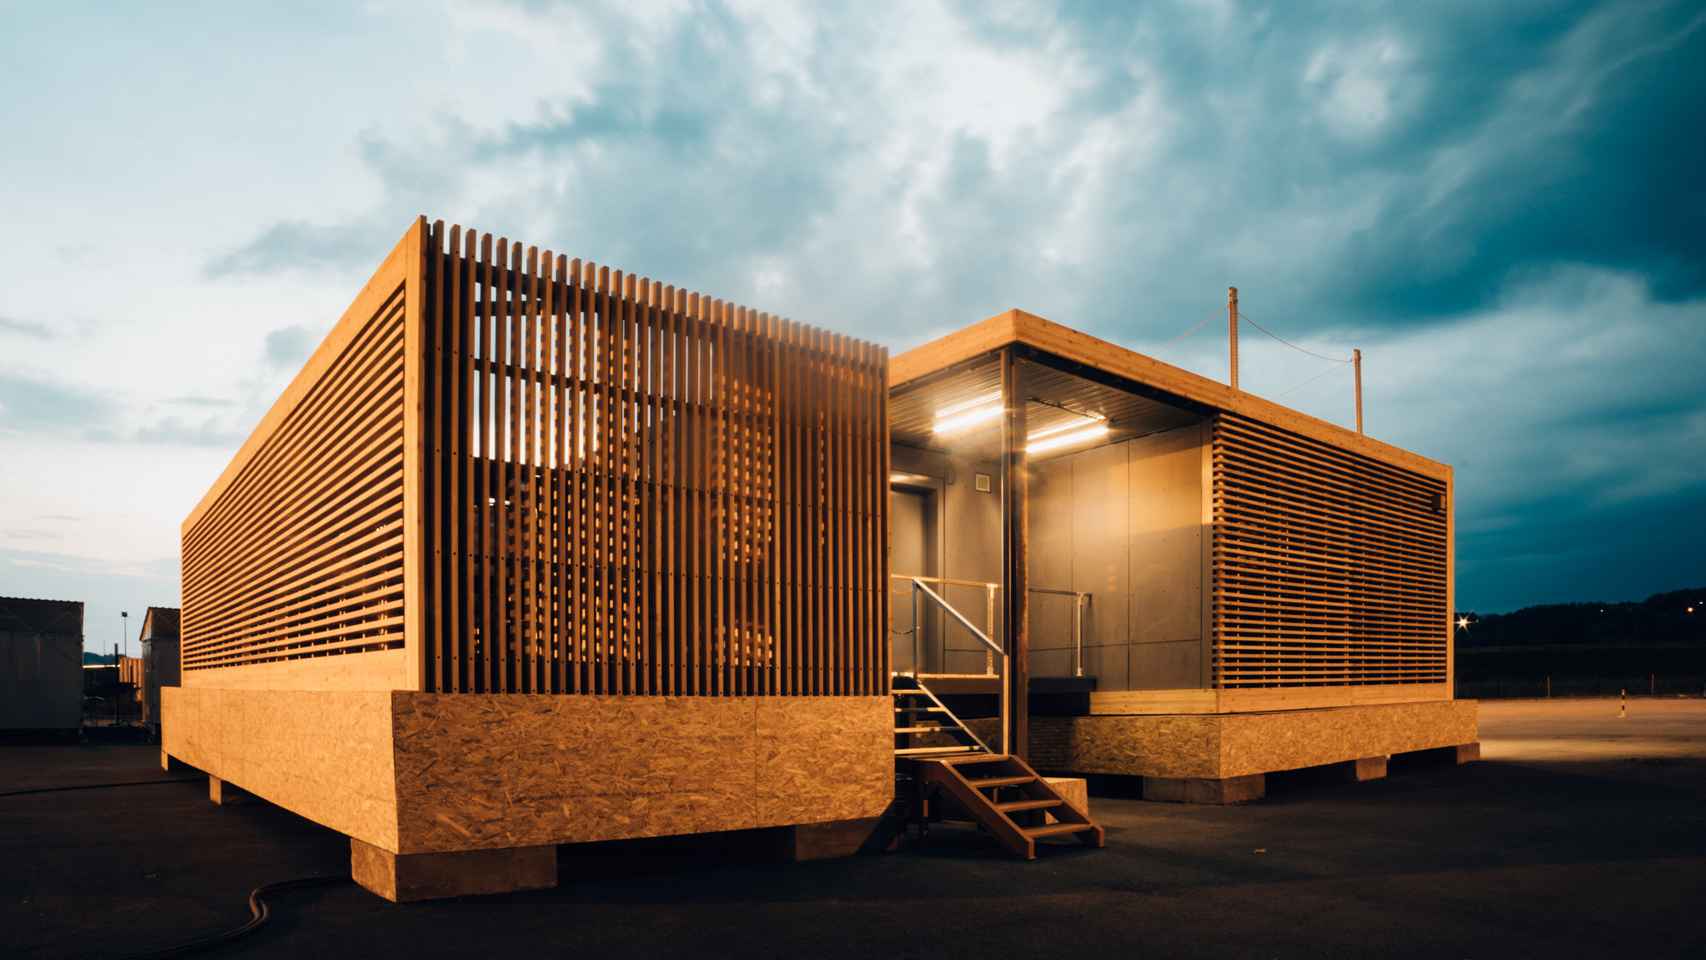 Centro de datos modular de Vertiv fabricado con madera.